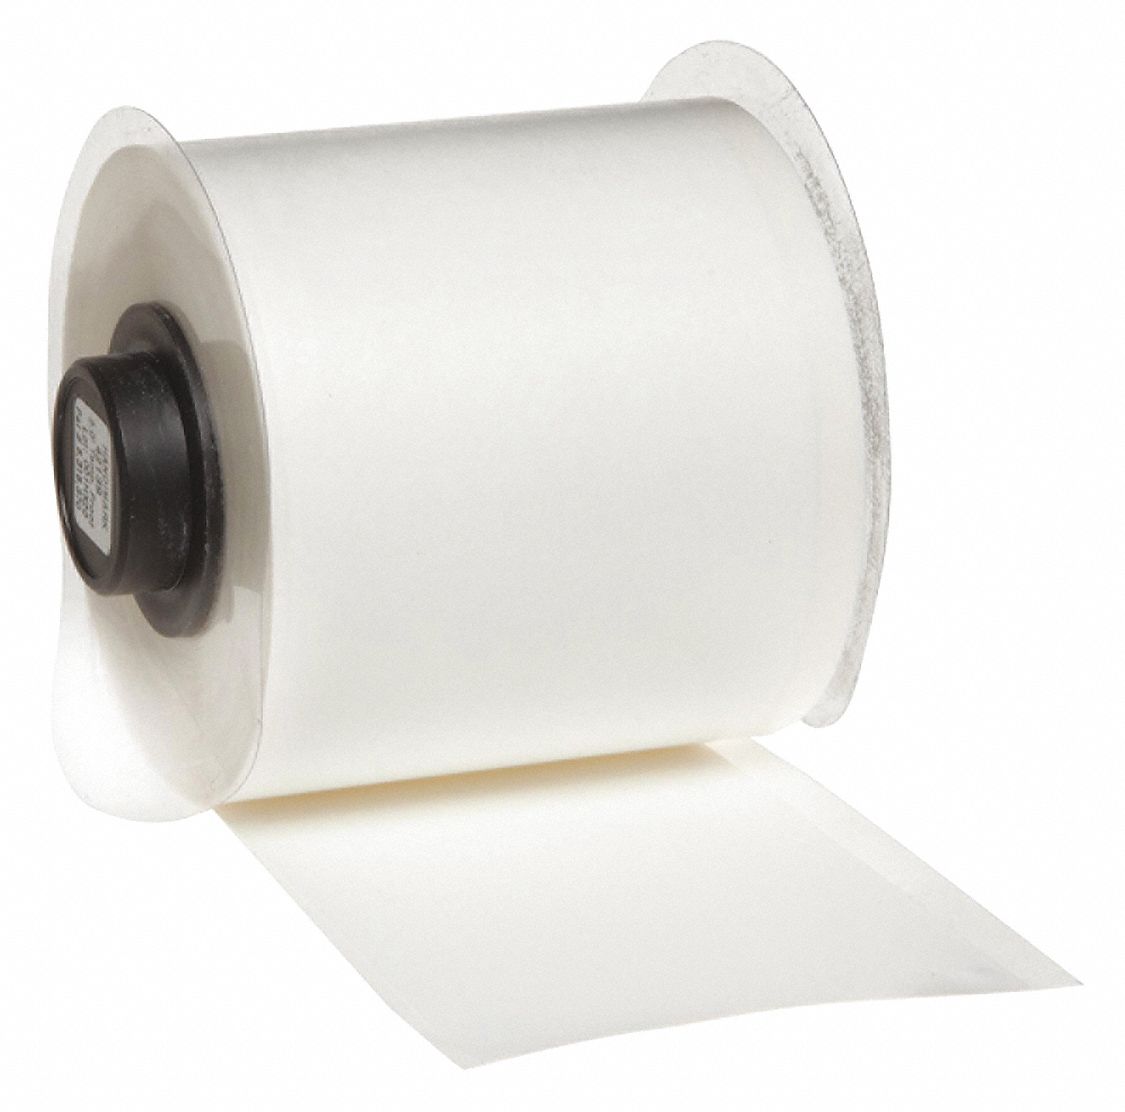 WhitePolypropylene Tamper-Resistant Tape Indoor Label Type, 50 ft. Length, 2